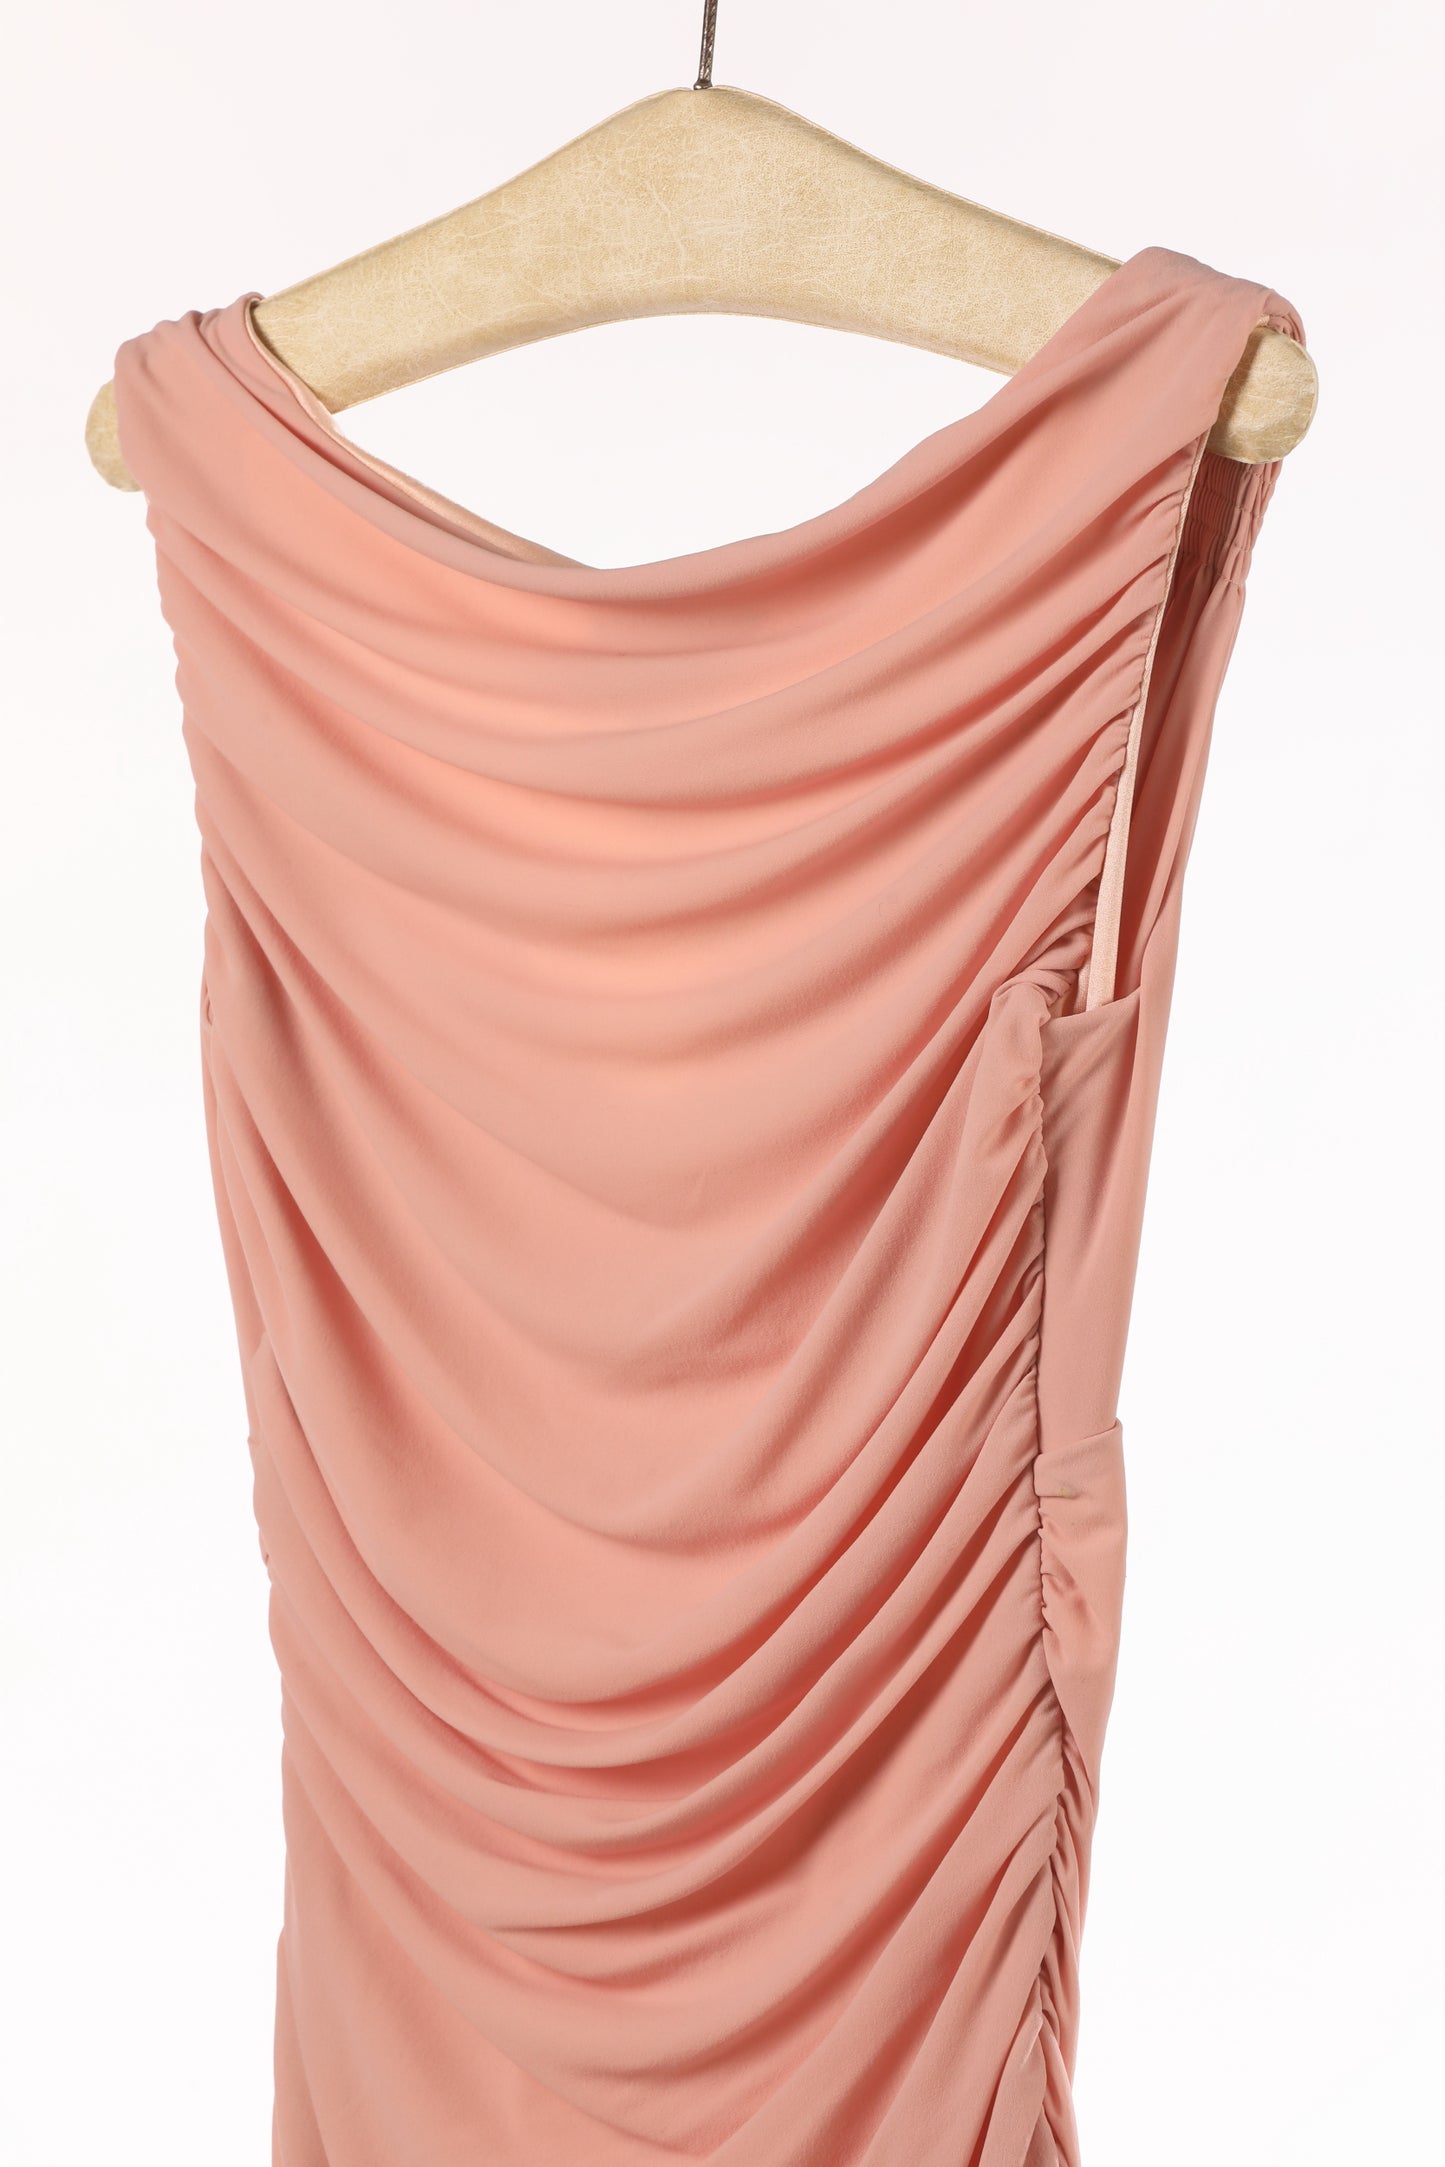 Norma Kamali 80s dress powder pink jersey